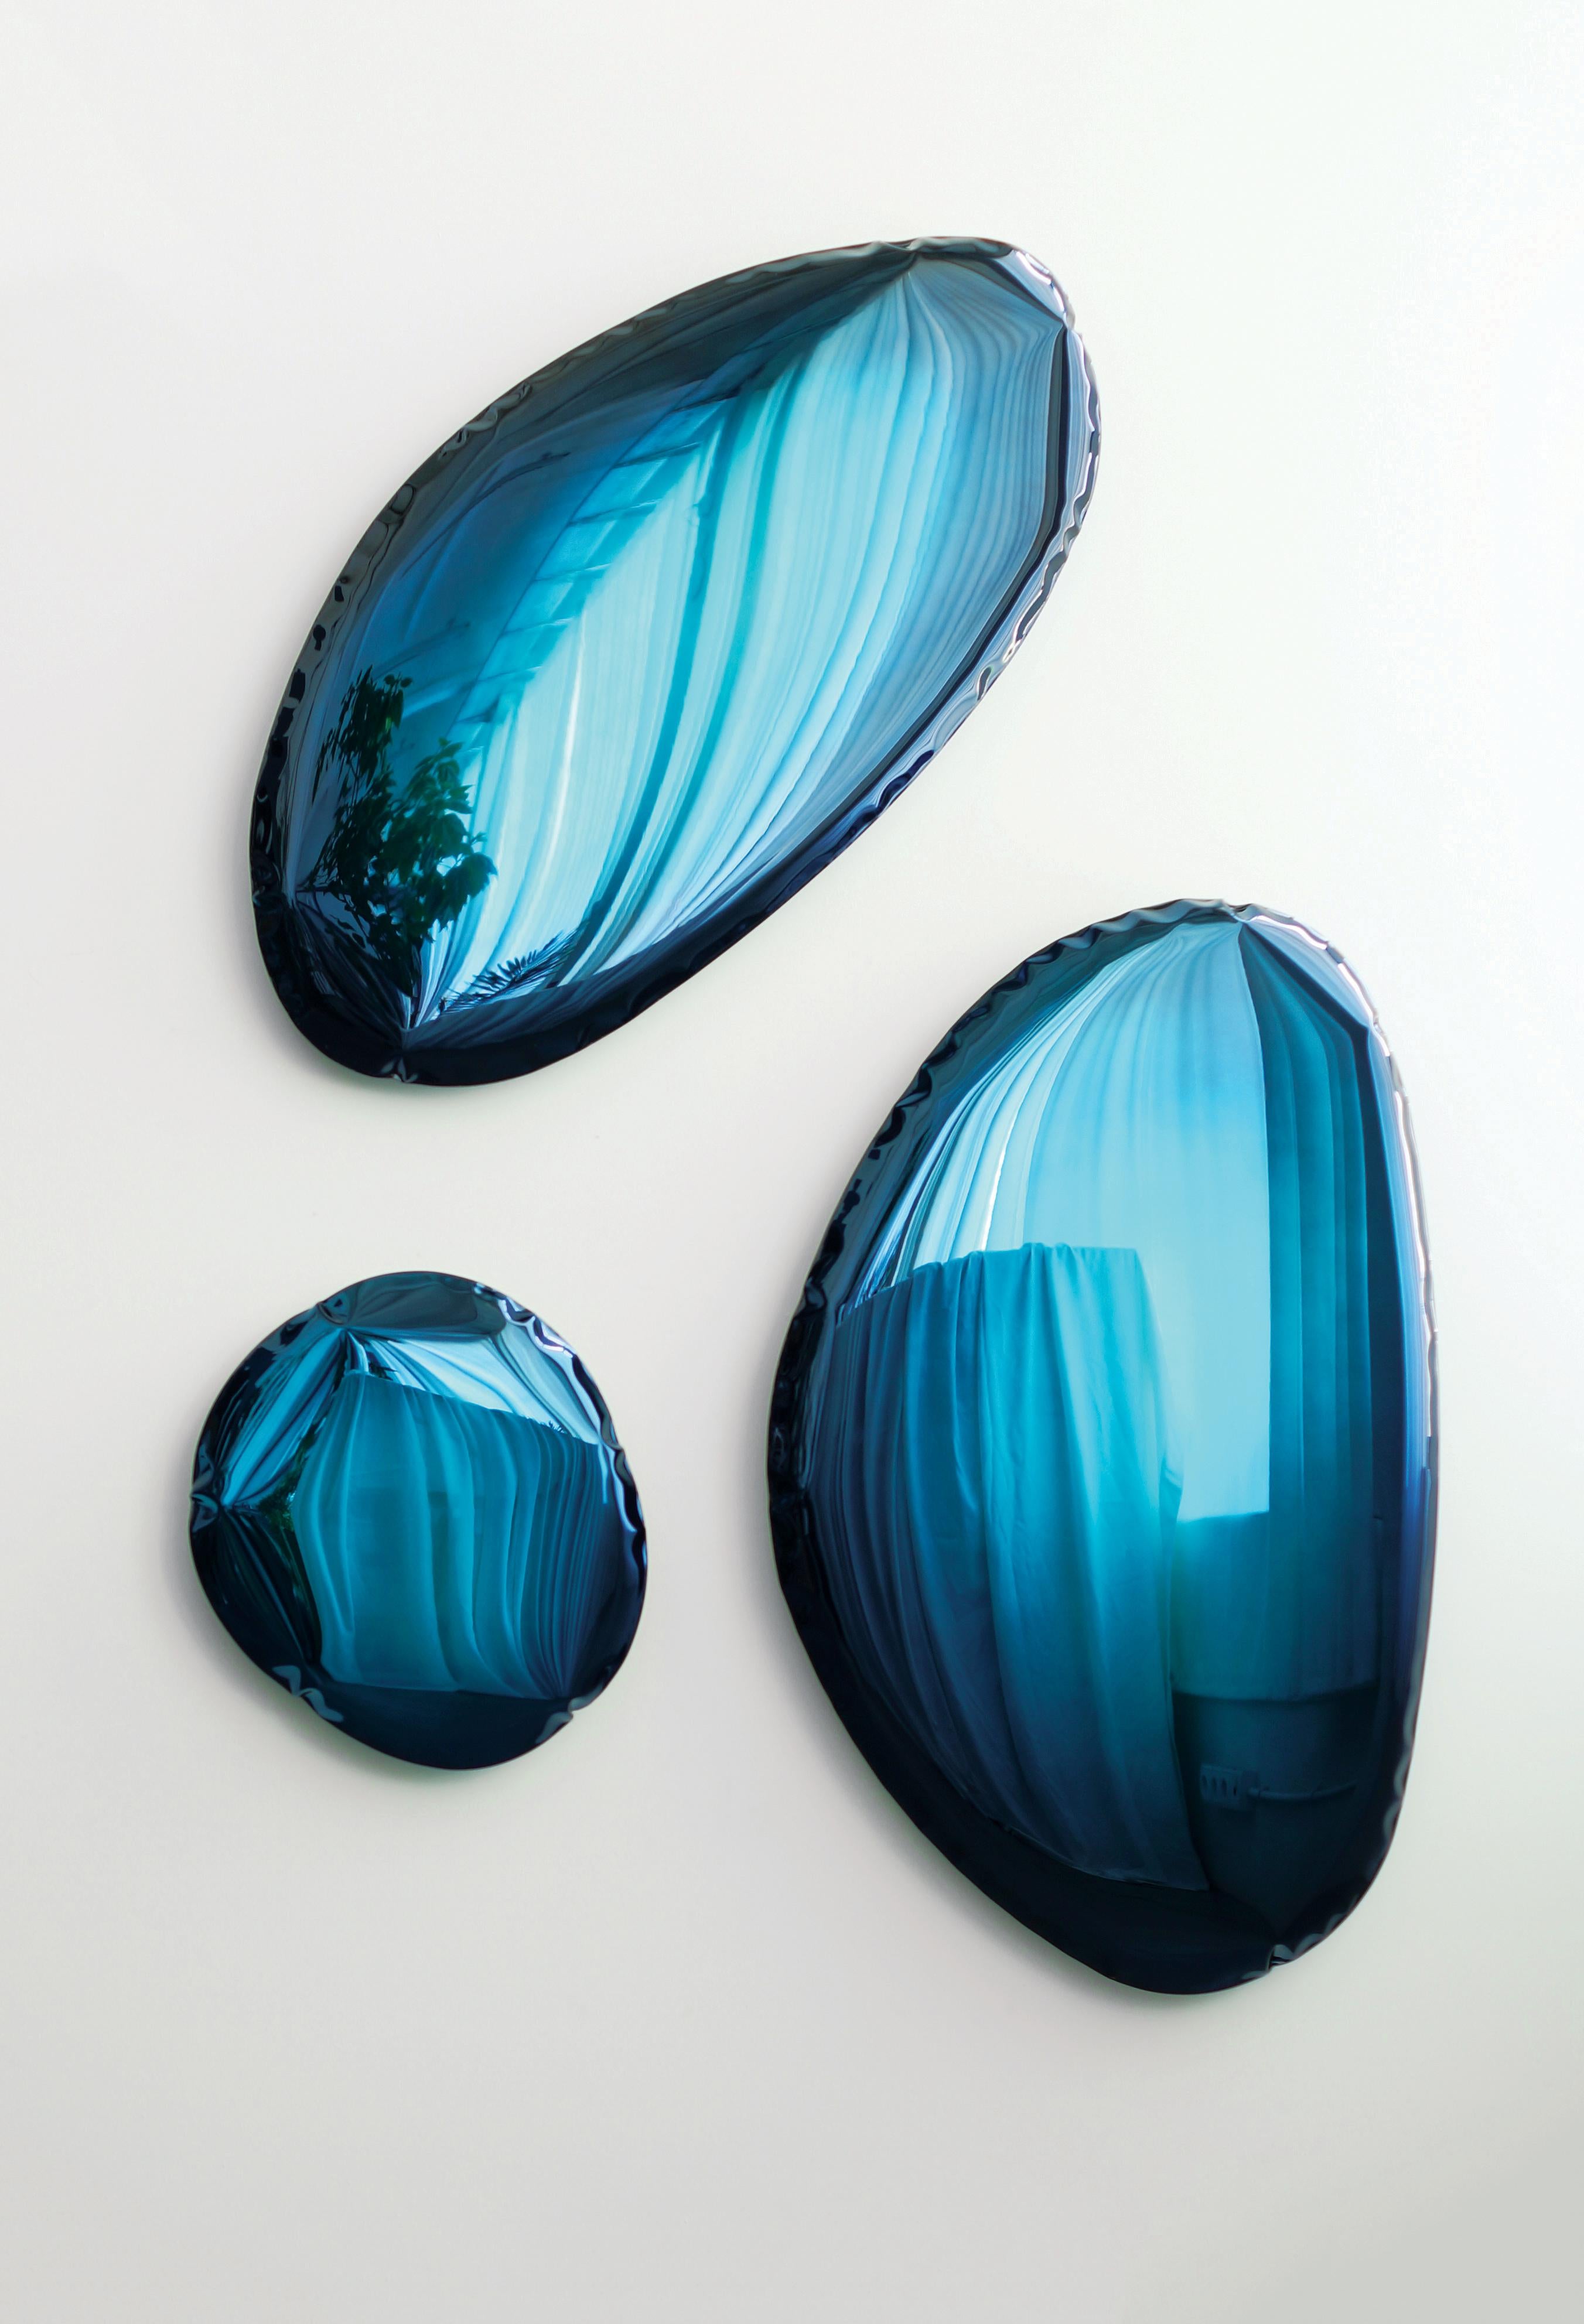 Zeitgenössischer spiegel Tafla O3 von Zieta
Kollektion Gradient, Oberfläche tiefes Weltraumblau

Original Zieta-Spiegel, geliefert mit Zertifikat.

Polierter rostfreier Stahl
Maße: 124 x 79 x 6 cm.

Verschiedene Ausführungen verfügbar: 
- Smaragd
-